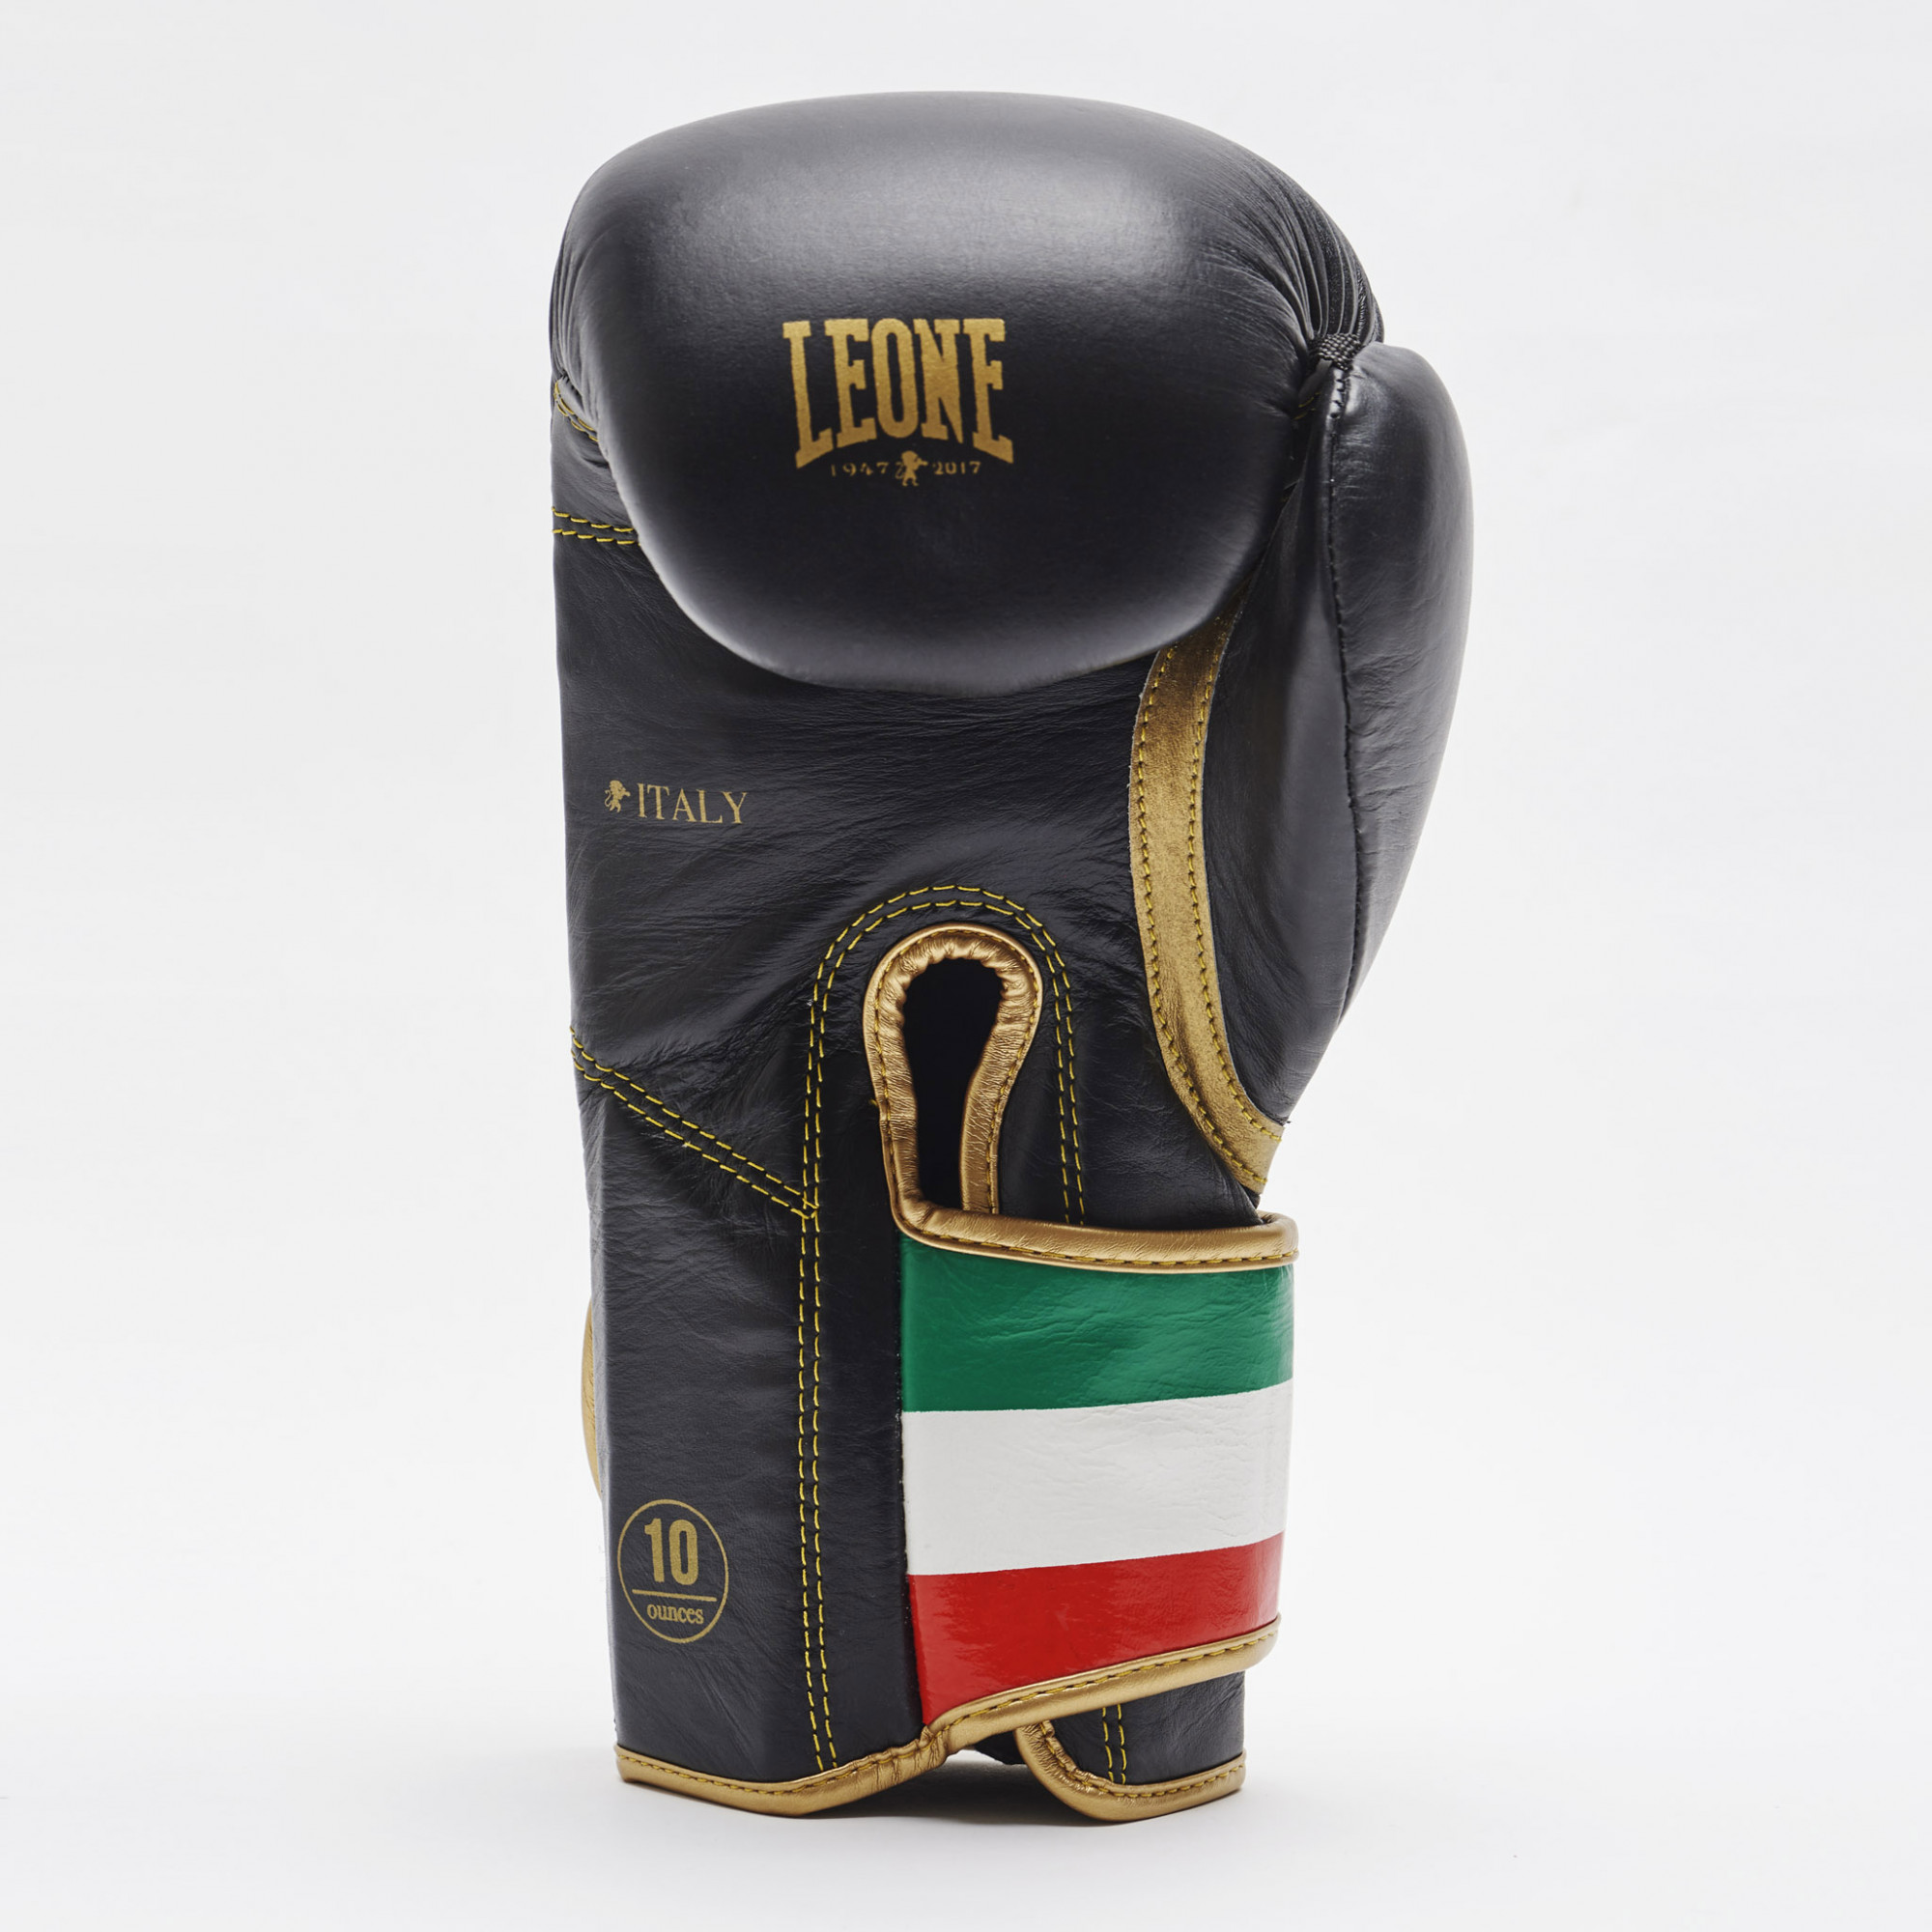  Боксерские перчатки LEONE ITALY 47 черные 